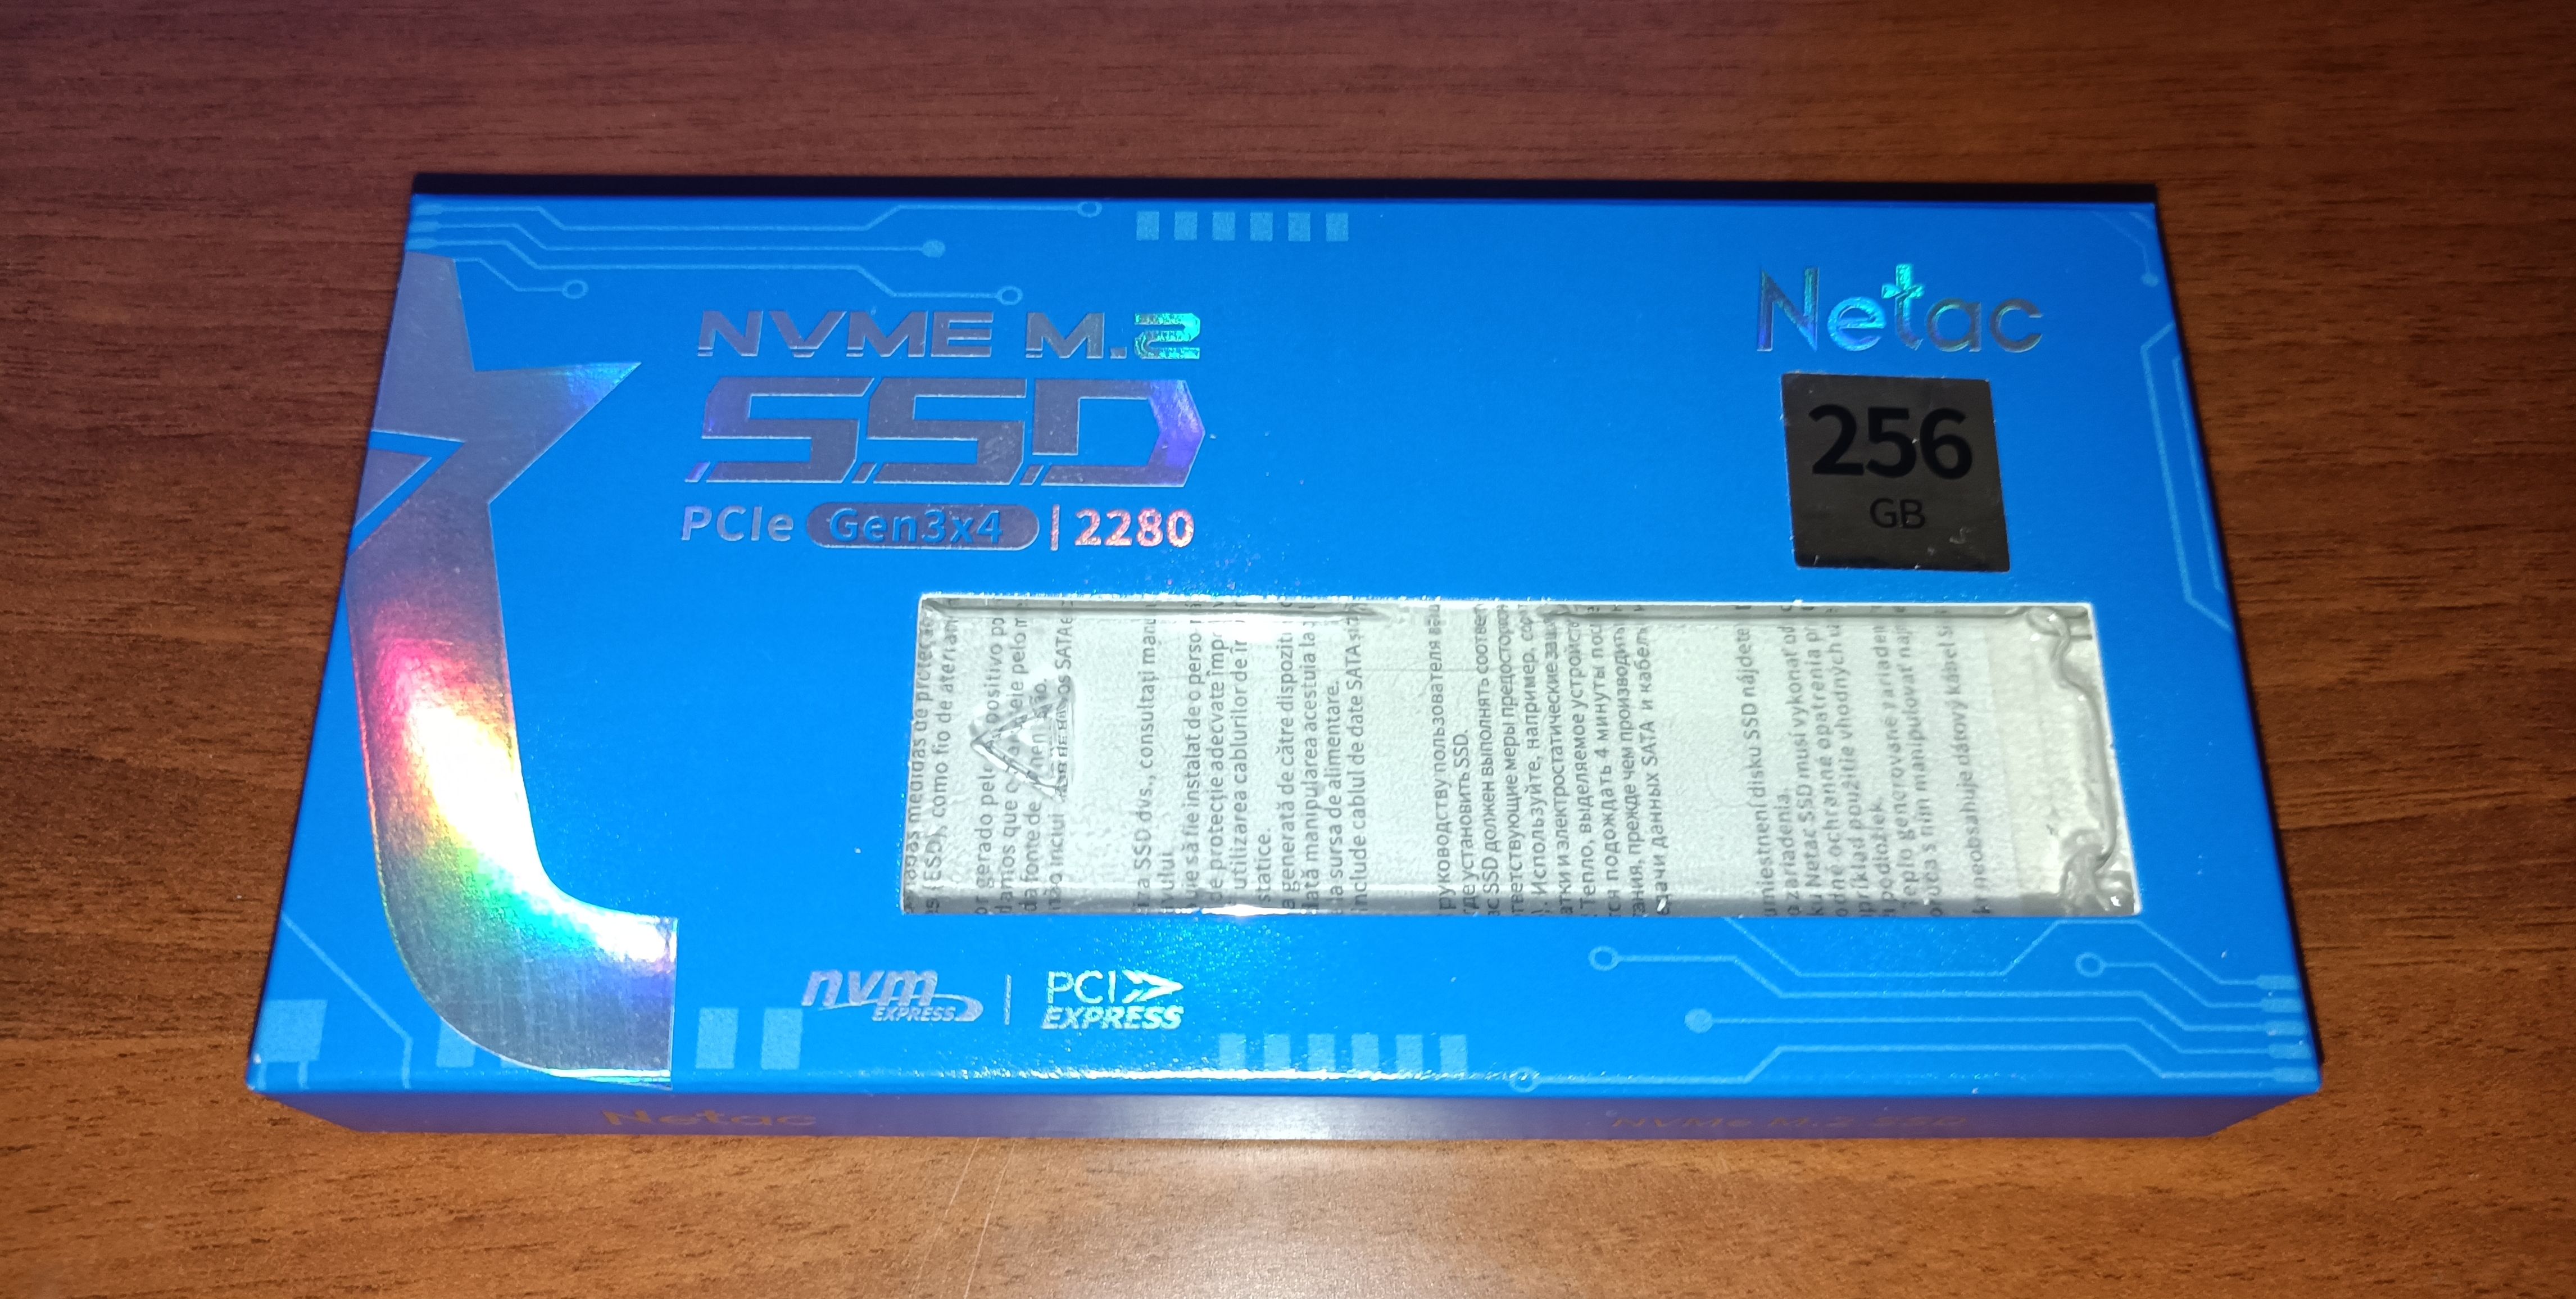 Netac N930E Pro NVMe 256 GB SSD - Disque Dur (NT01N930E-256G-E4X)